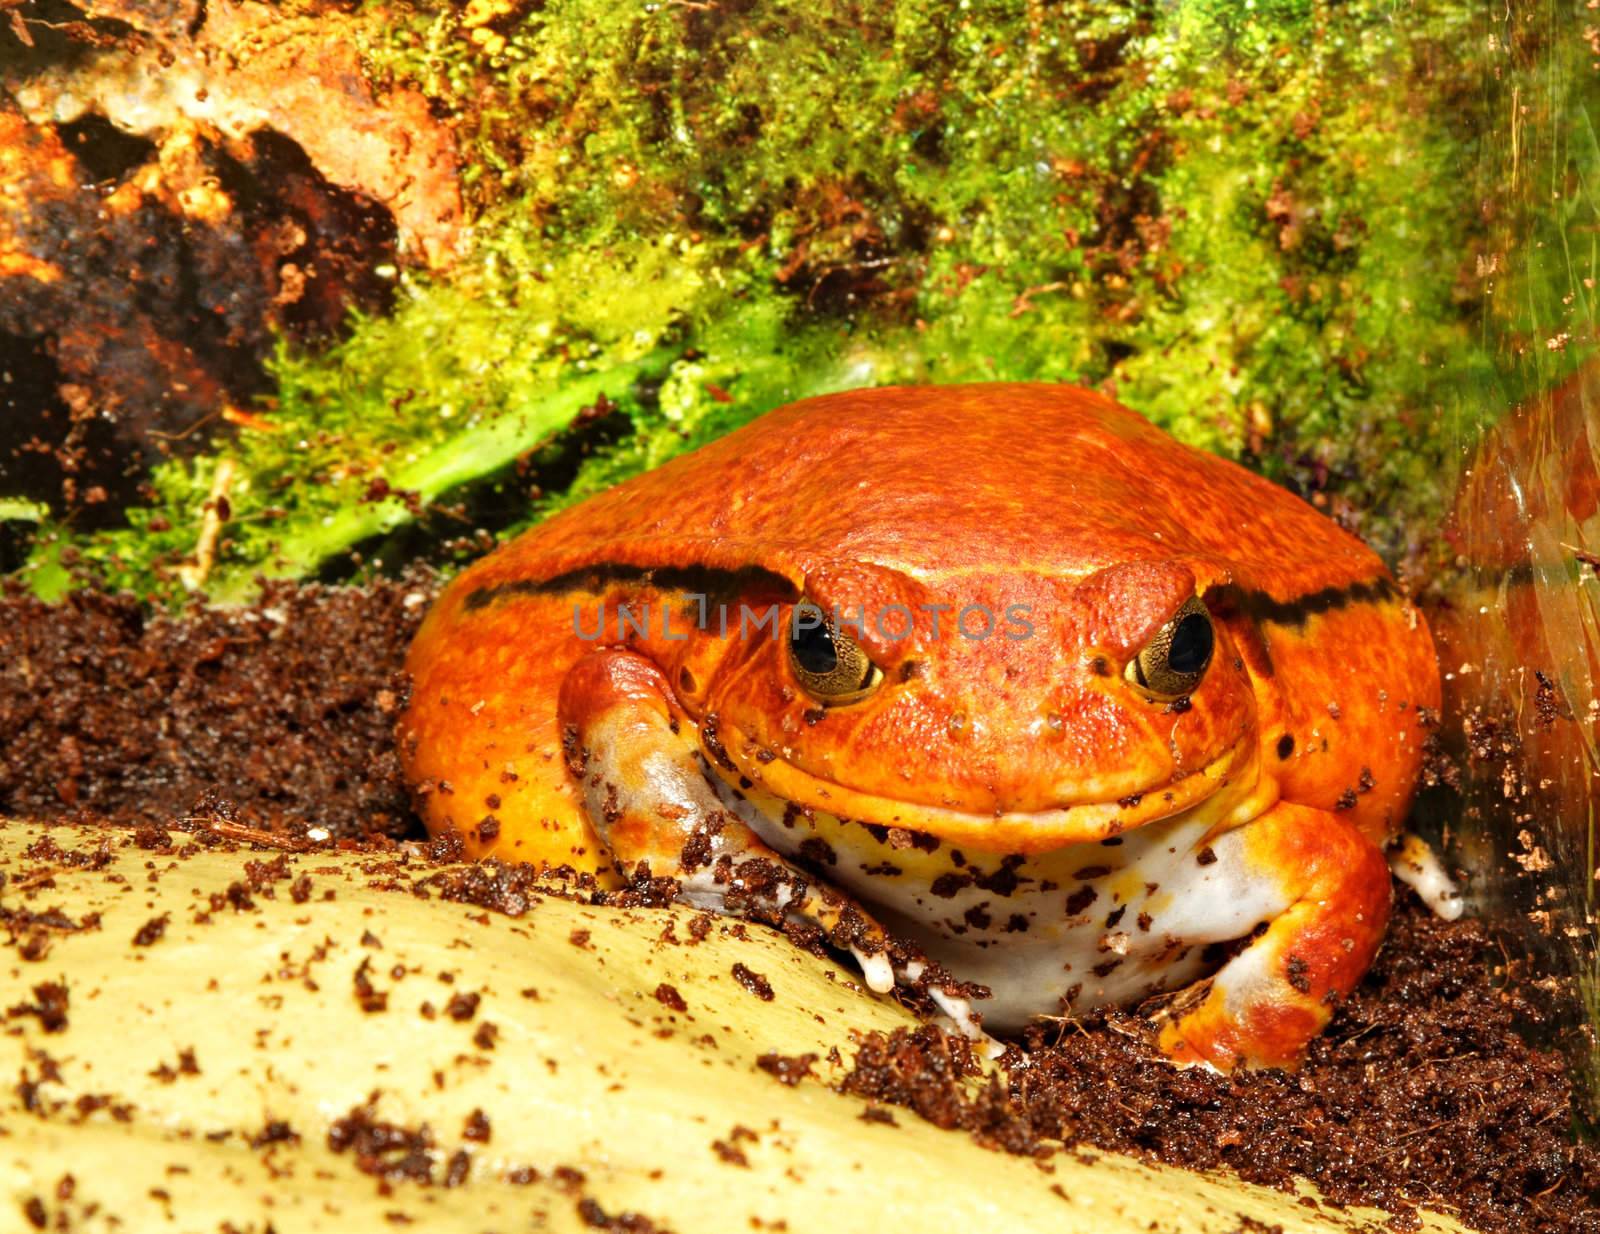 Tomato frog (Dyscophus Antongilii) in its terrarium